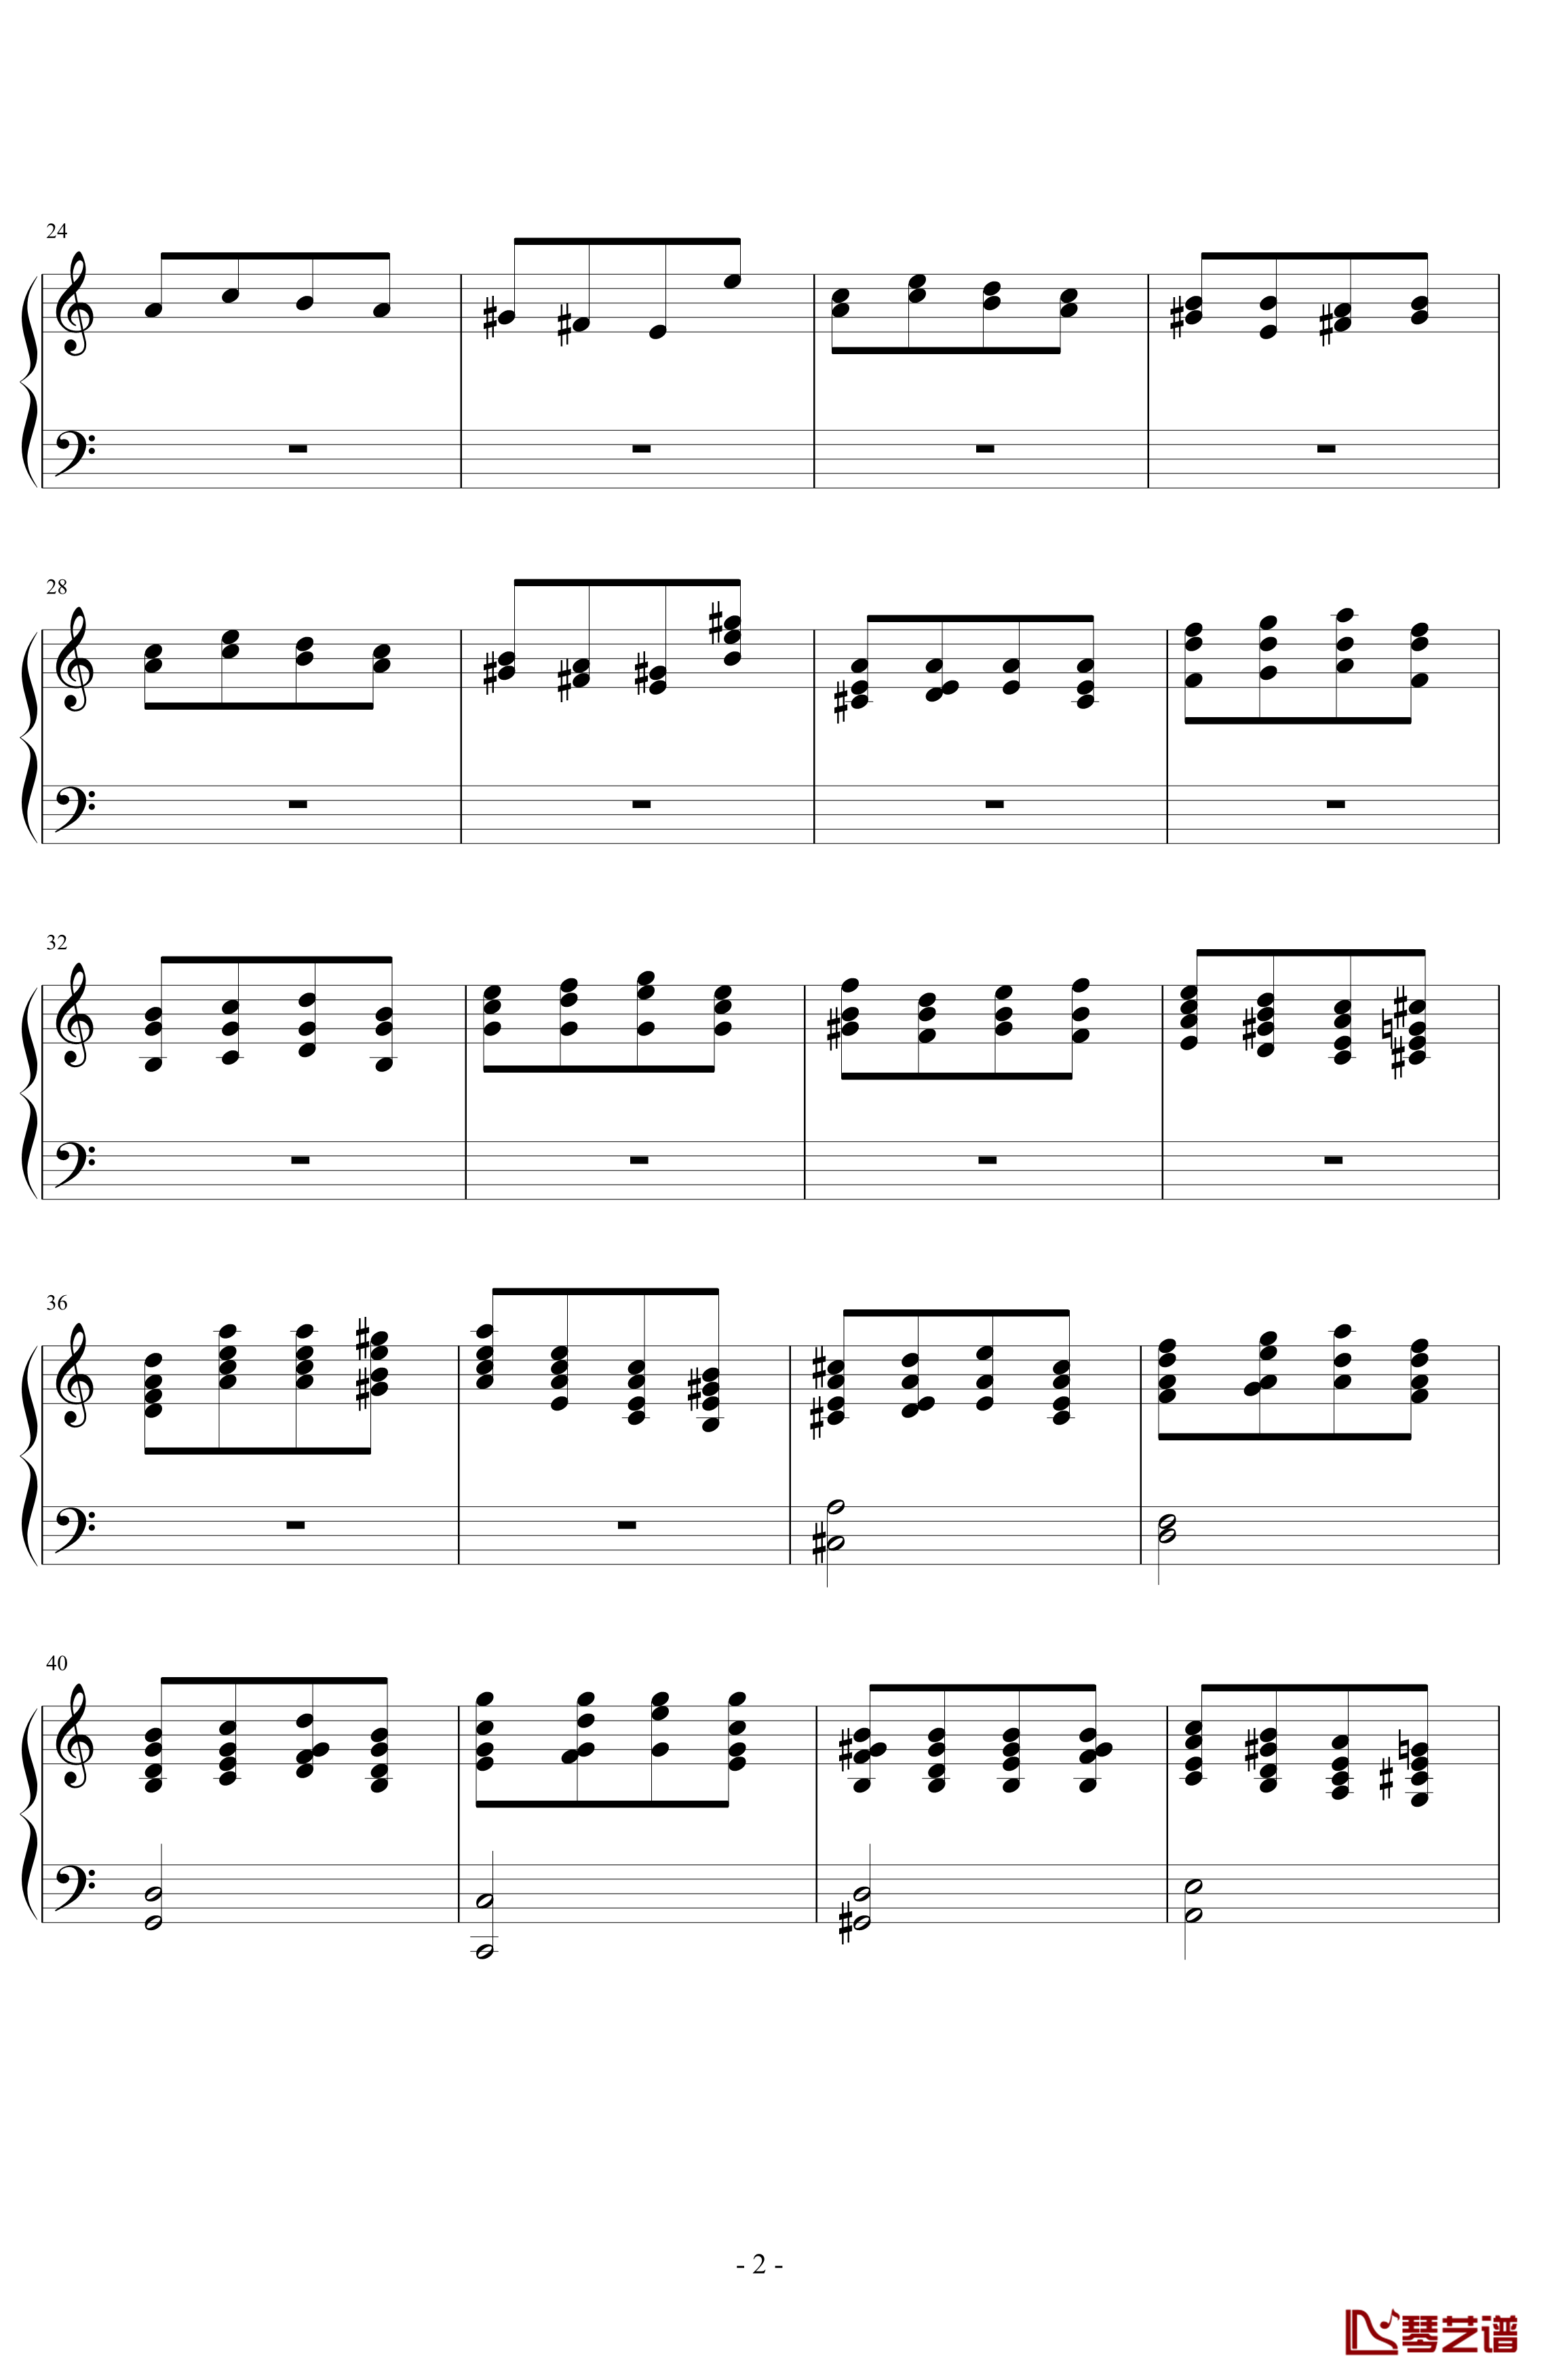 经典主题变奏曲钢琴谱-丁晓峰2